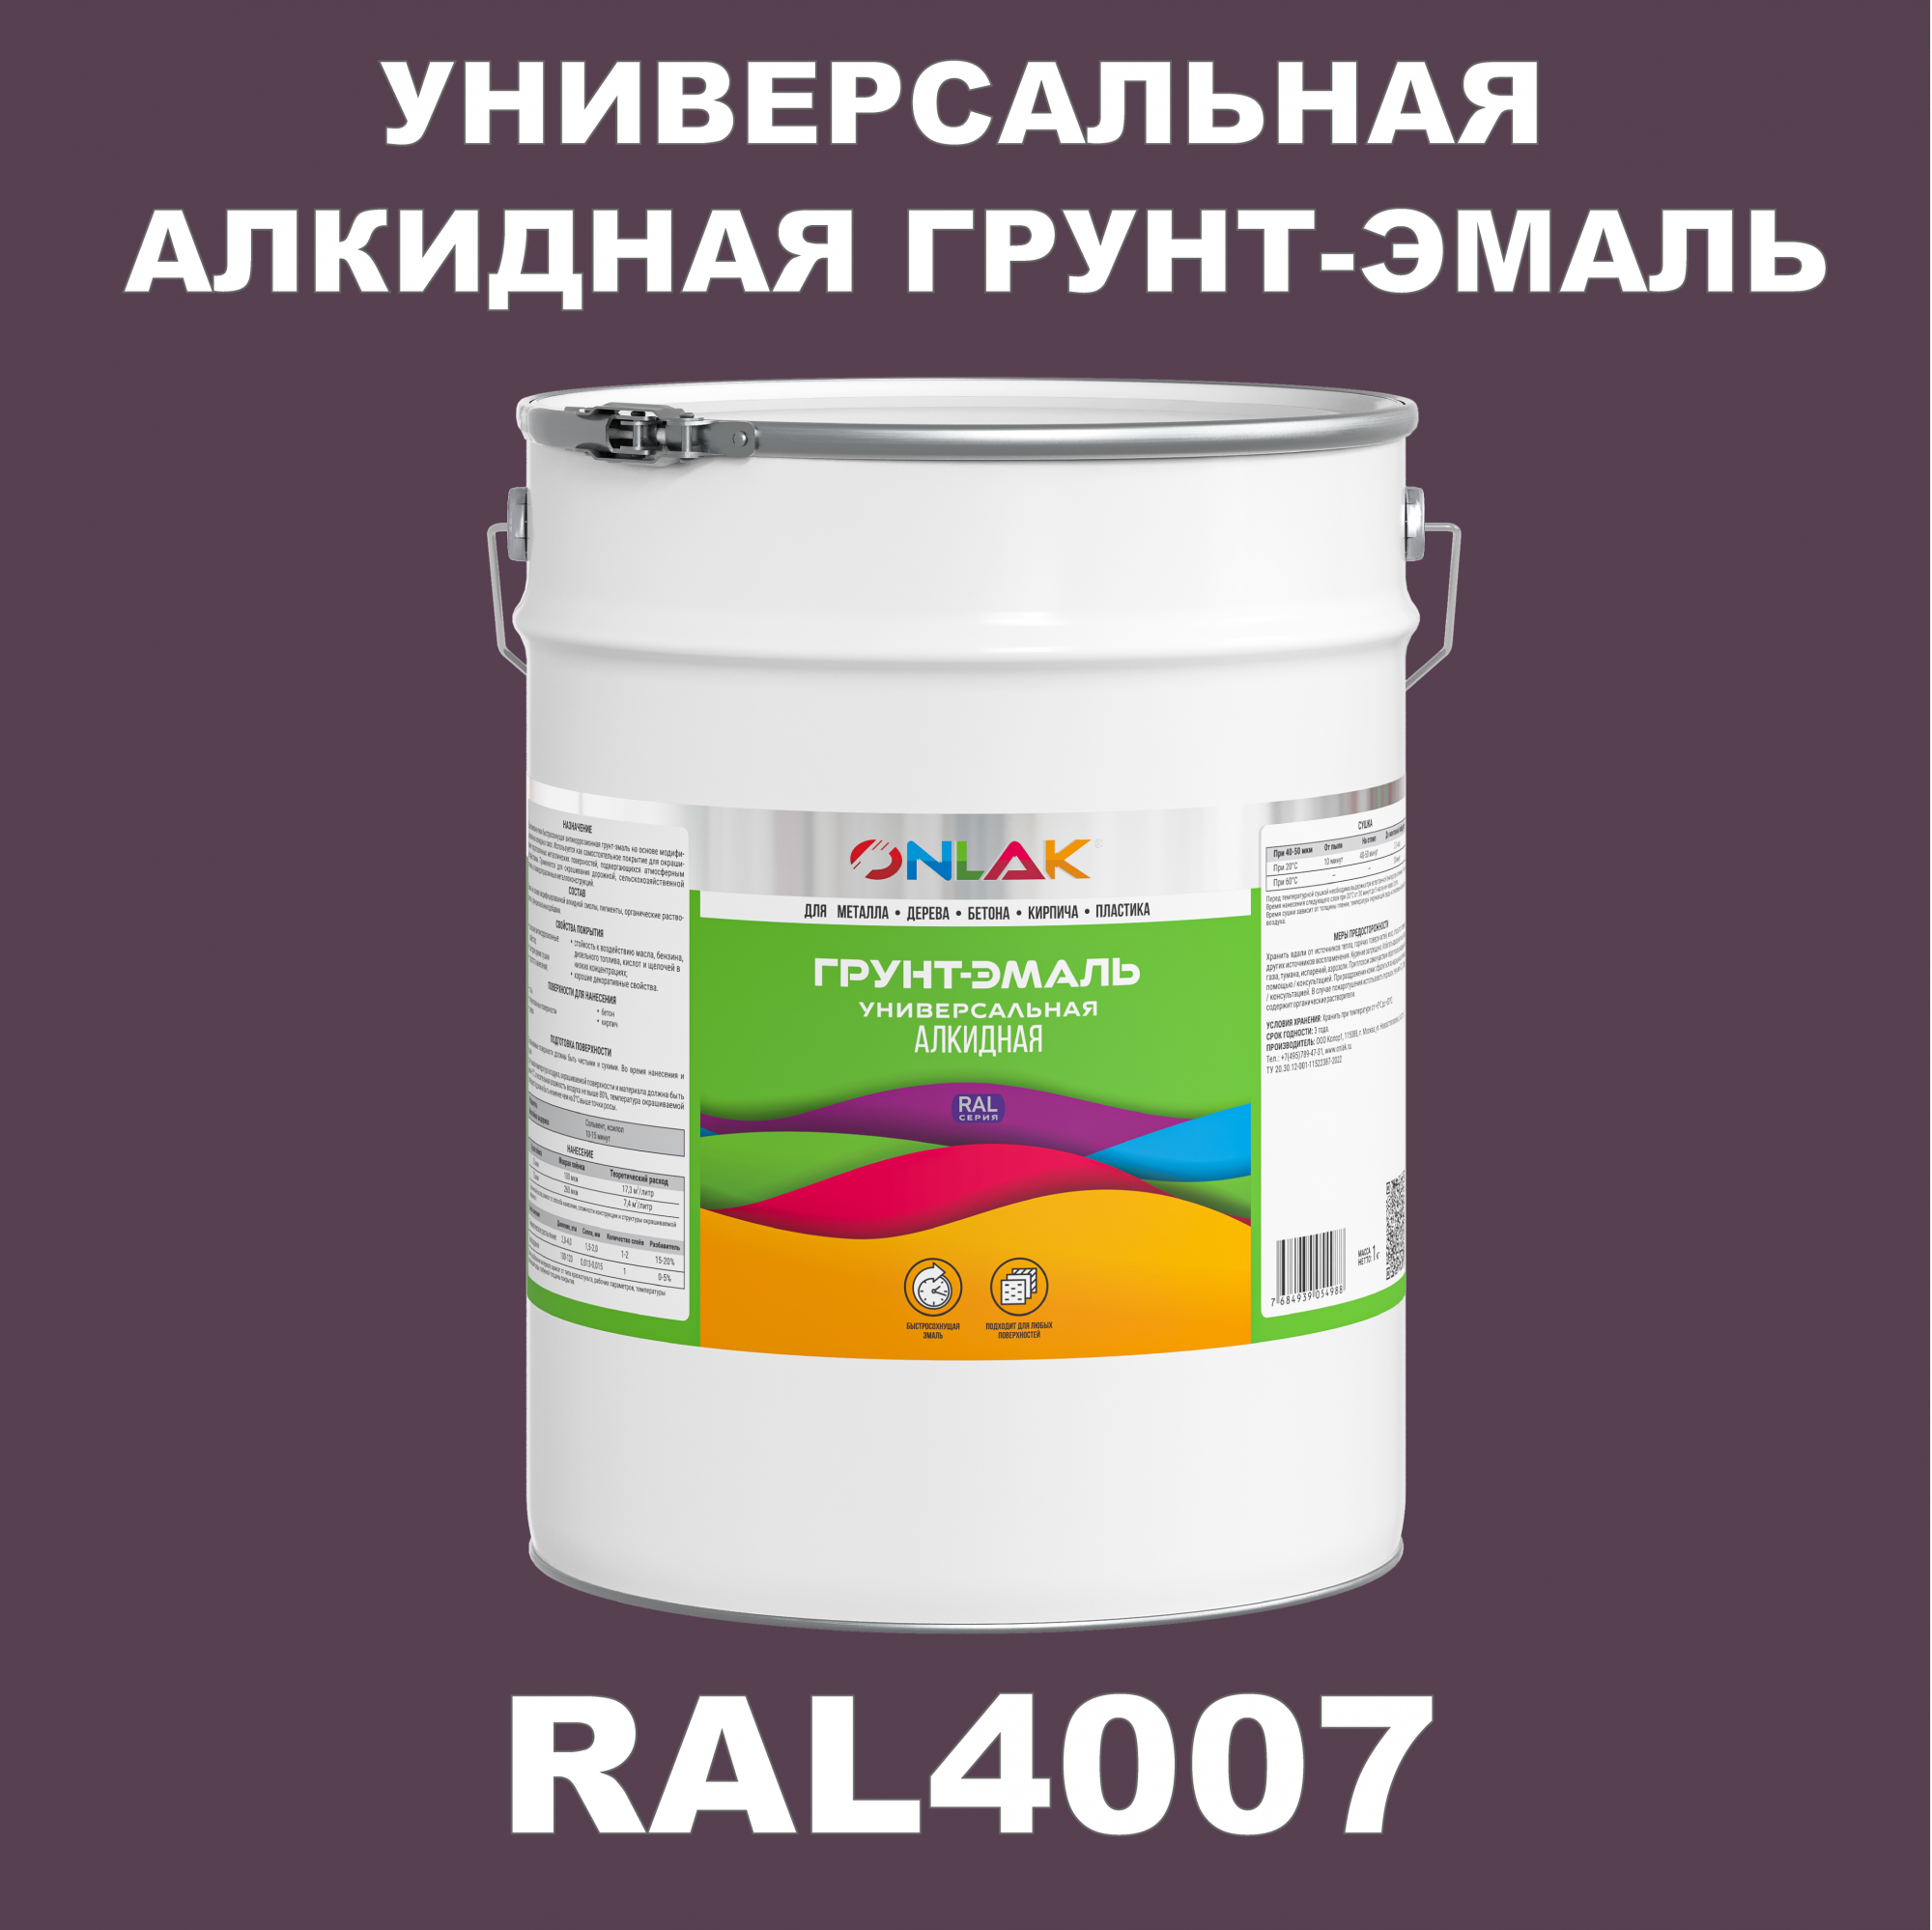 Грунт-эмаль ONLAK 1К RAL4007 антикоррозионная алкидная по металлу по ржавчине 20 кг artuniq color violet ной грунт для аквариума фиолетовый 1 кг